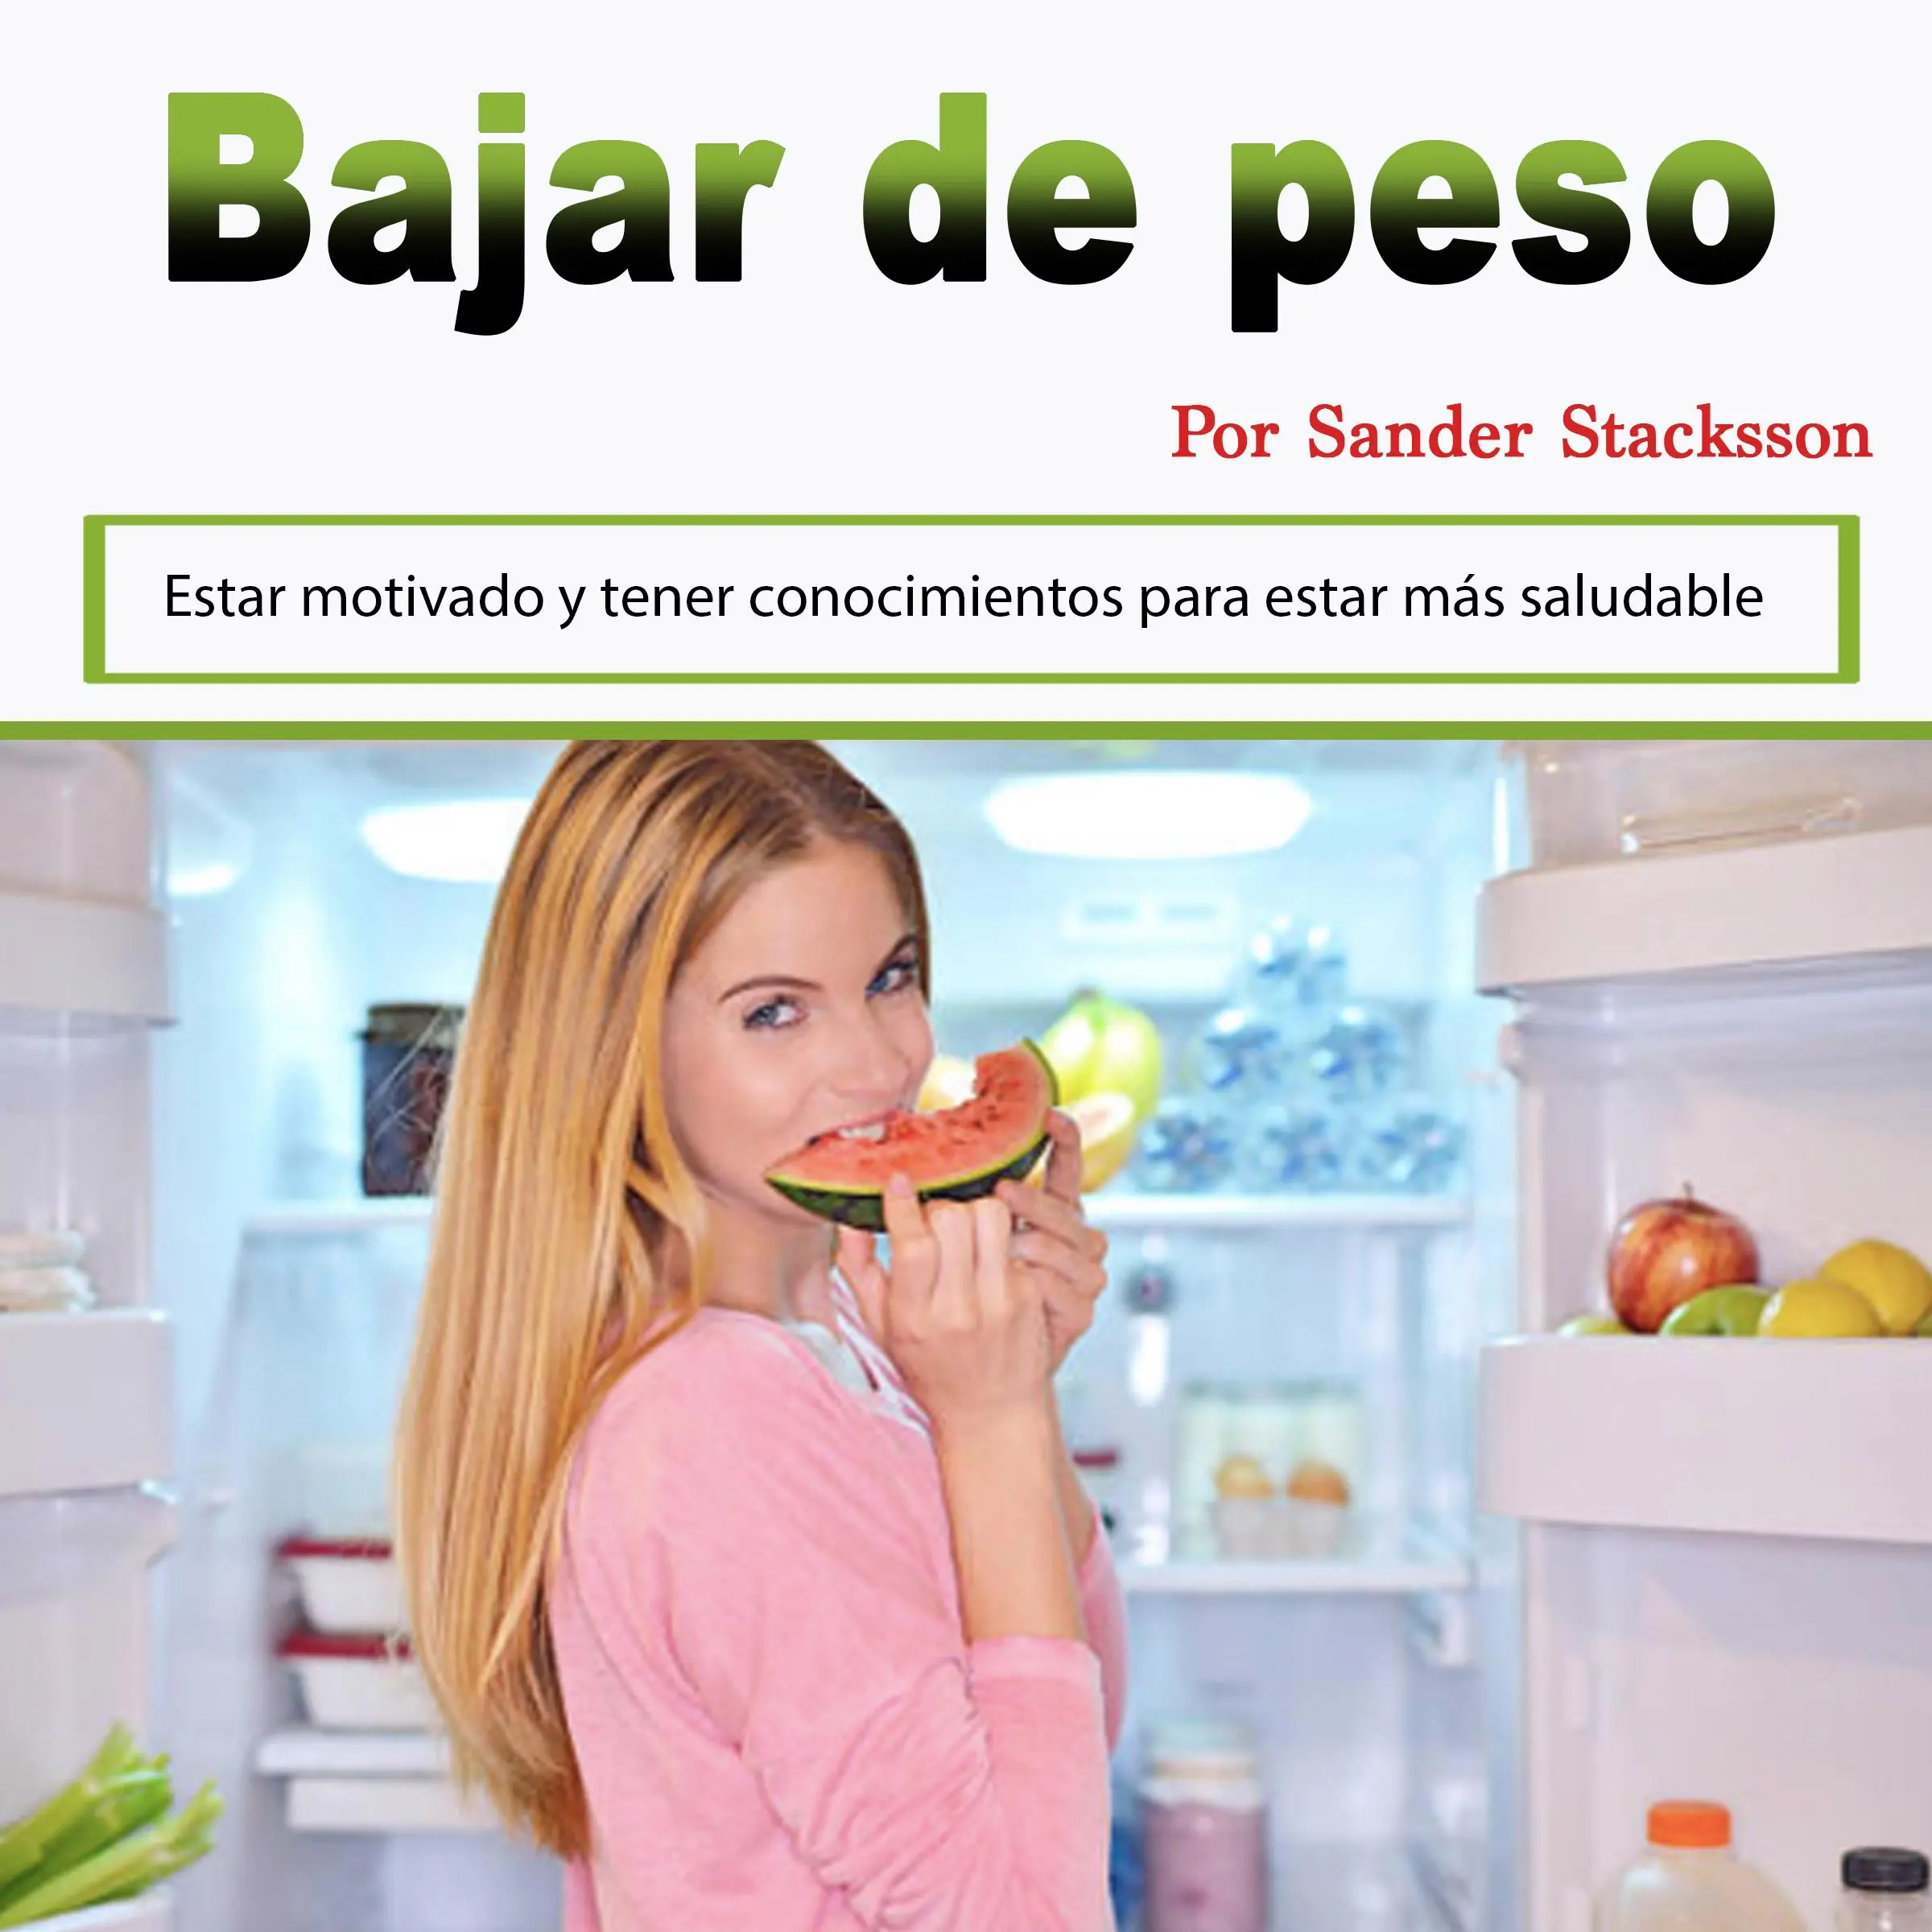 Bajar de peso: Estar motivado y tener conocimientos para estar más saludable (Spanish Edition) Audiobook by Sander Stacksson